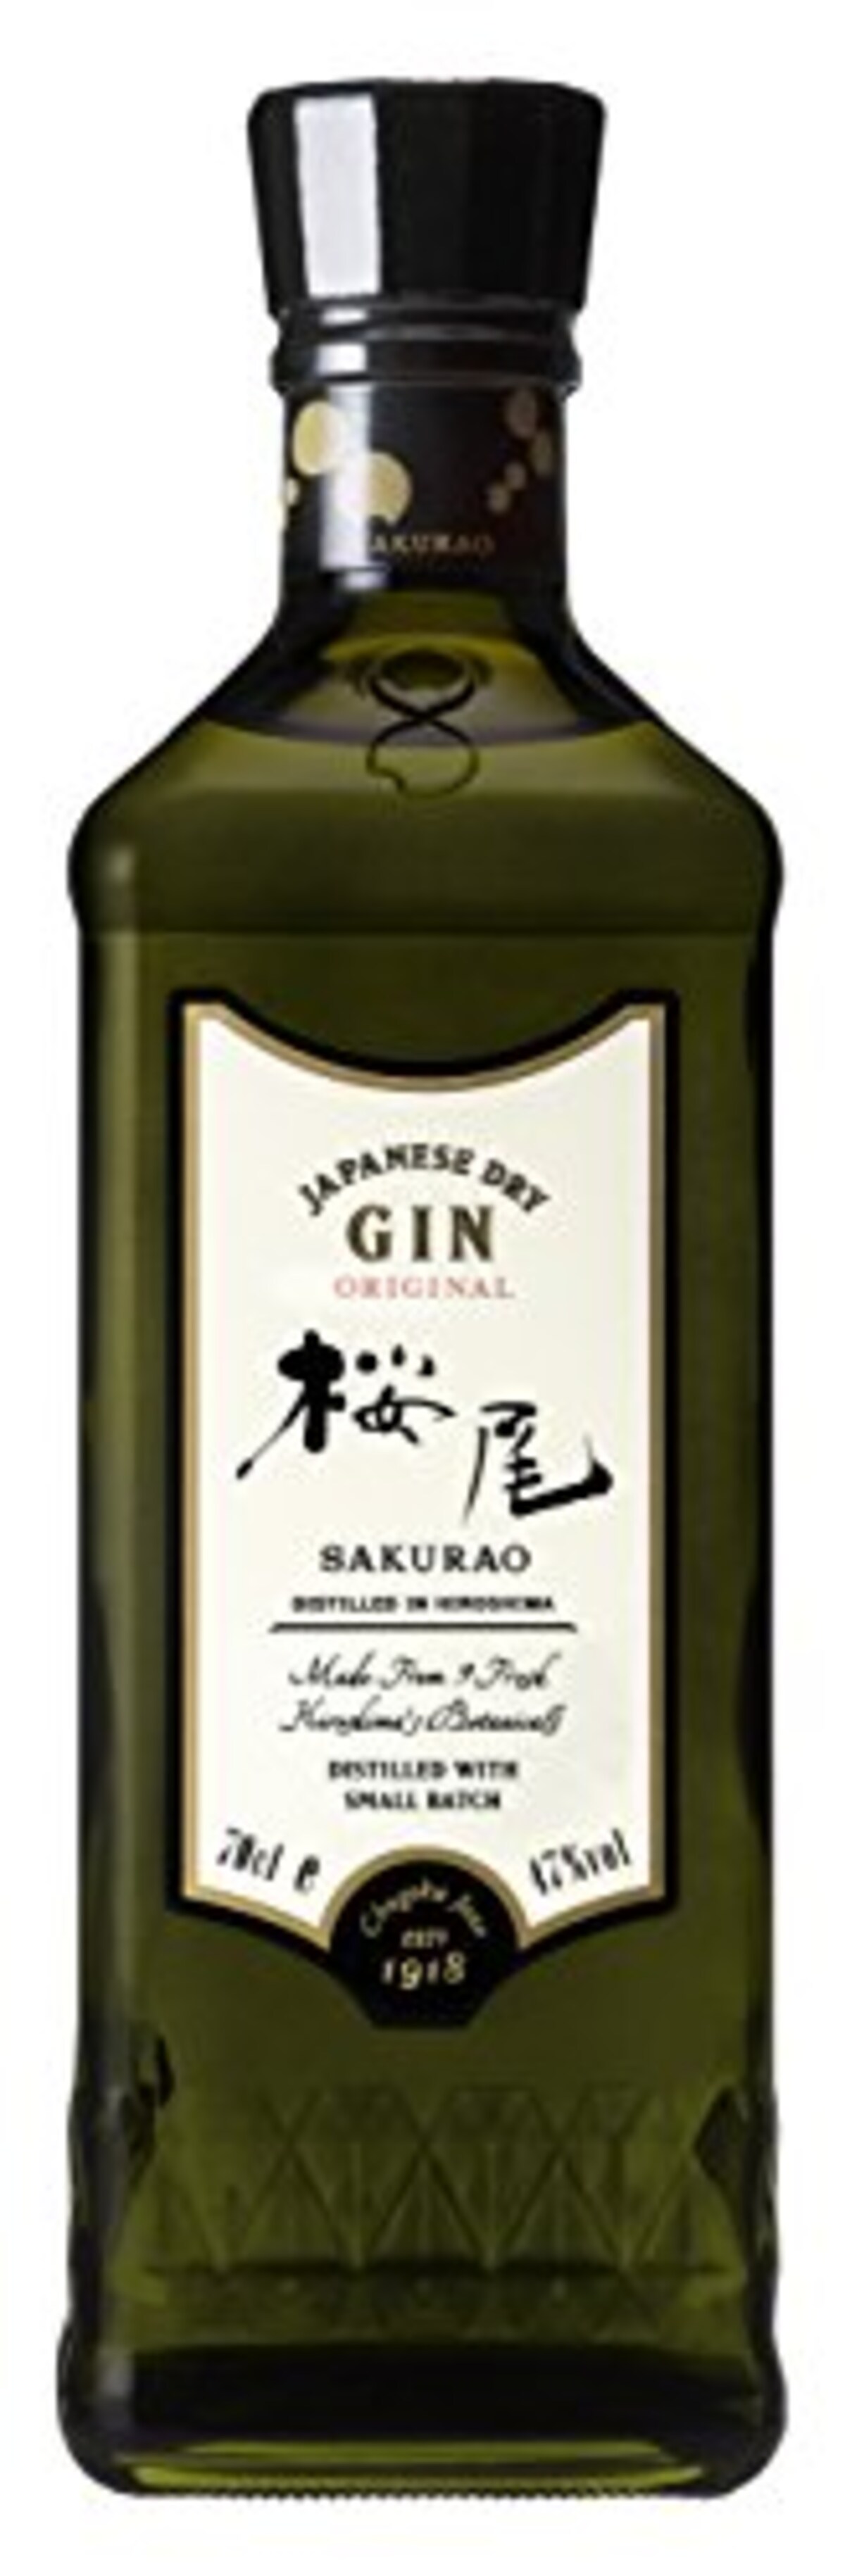 SAKURAO GIN ORIGINAL